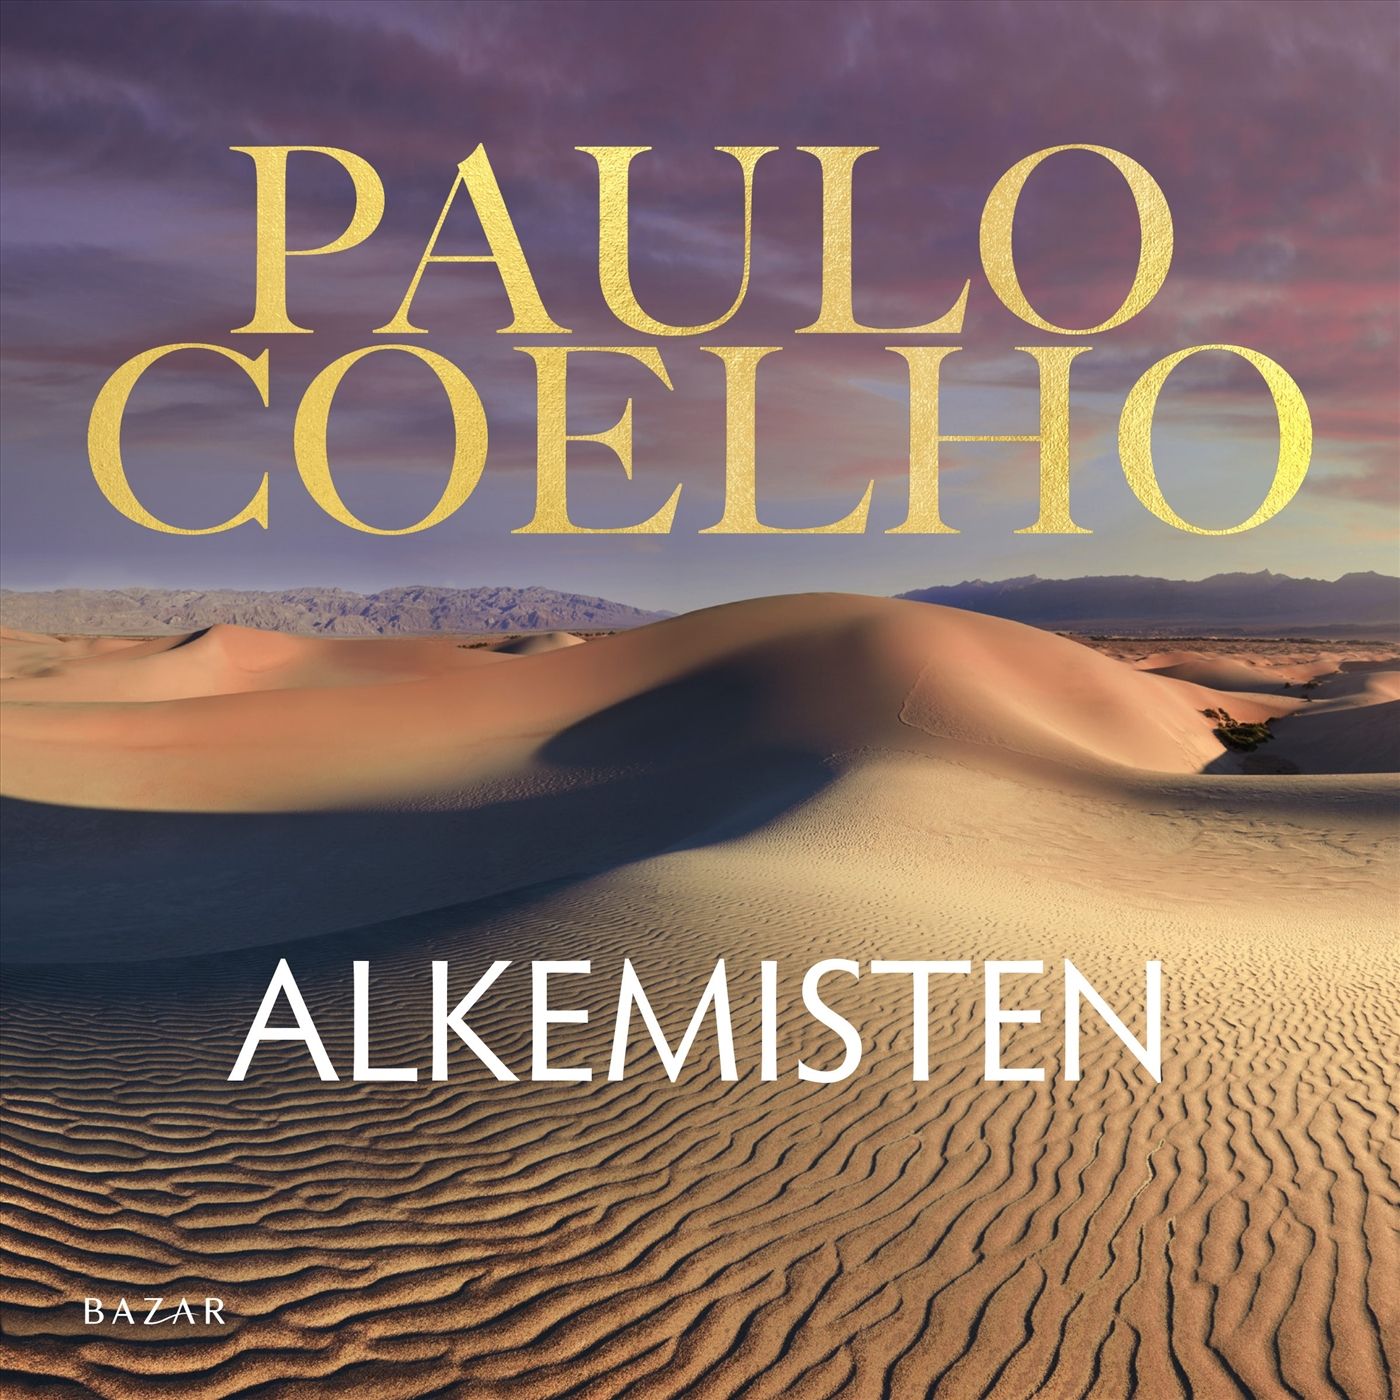 Alkemisten, ljudbok av Paulo Coelho